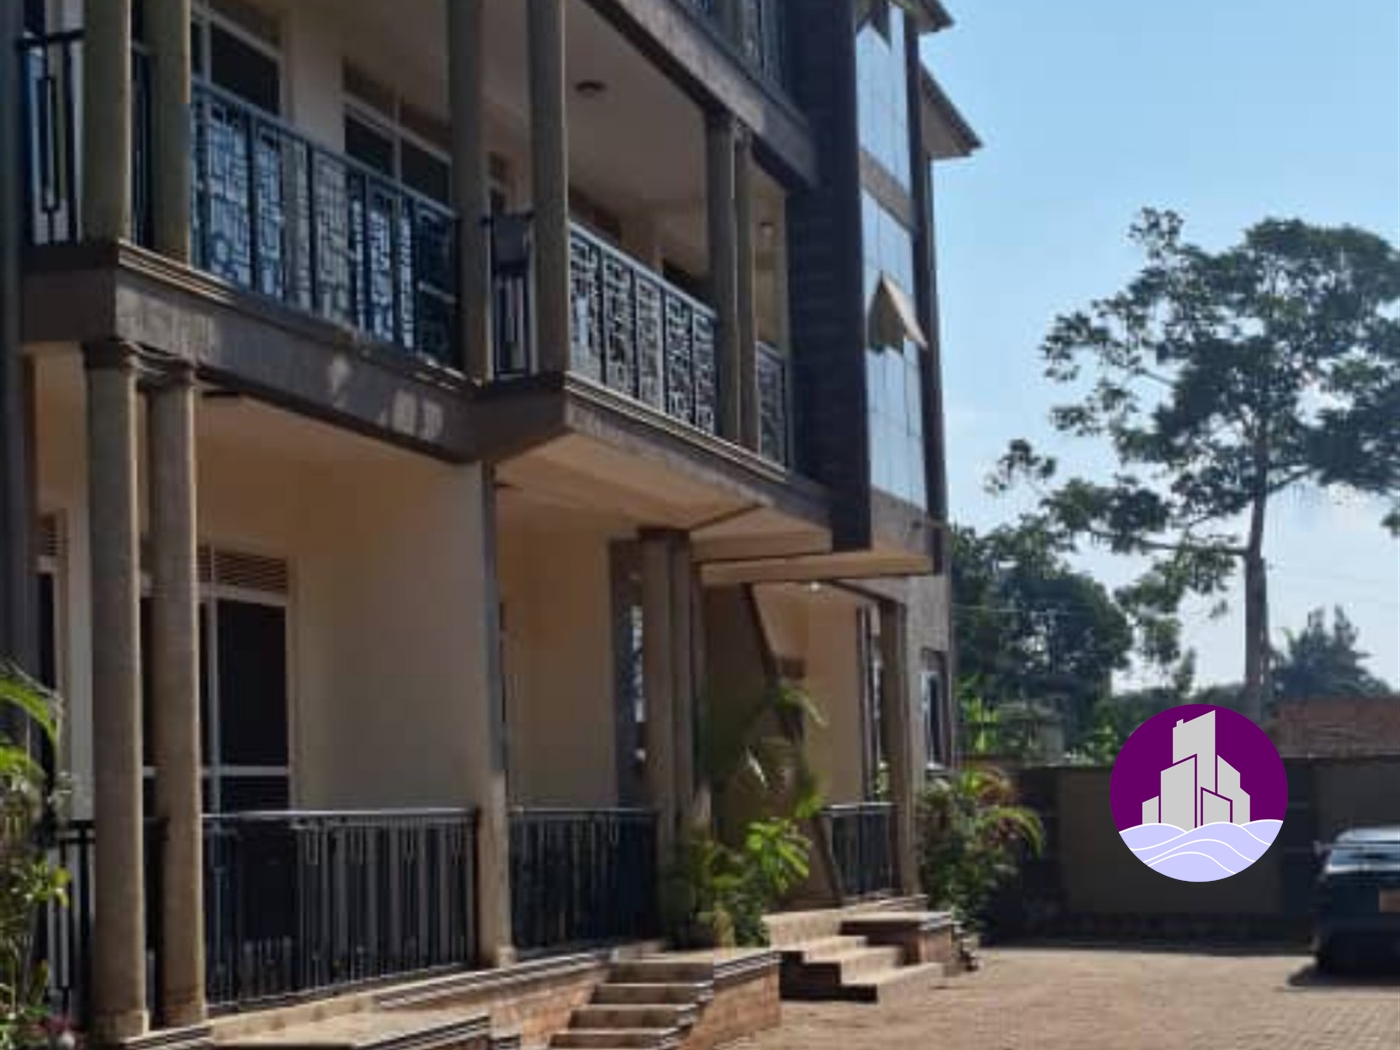 Apartment block for sale in Najjera Kampala